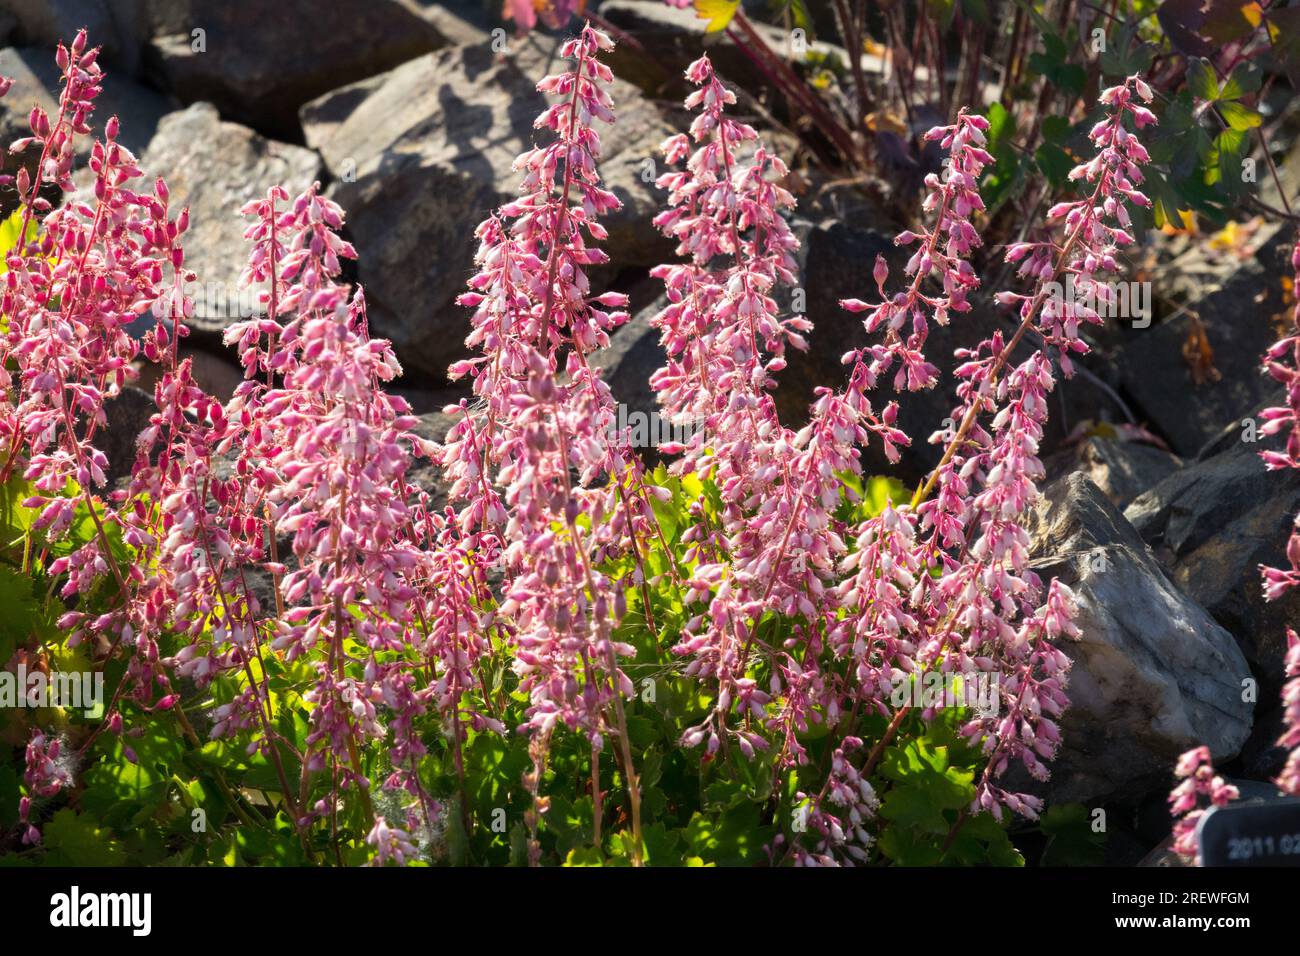 Alpine Plants Garden Rockery Flowers Pink Flower Heuchera pulchella Stock Photo